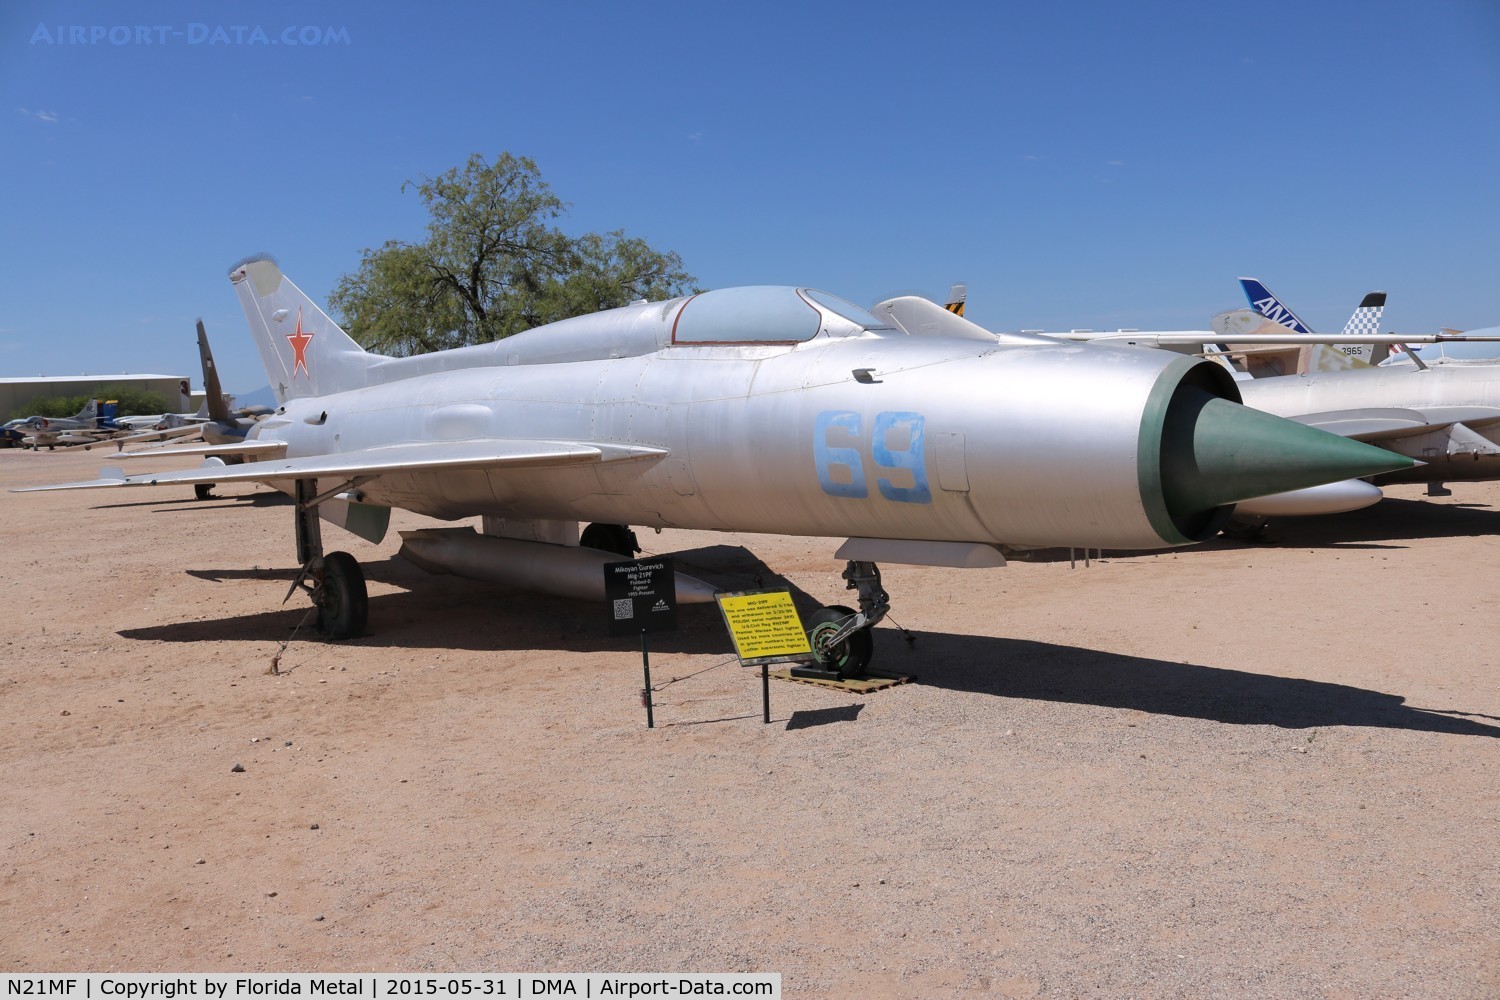 N21MF, Mikoyan-Gurevich MiG-21PF C/N 762410, Mig-21PF